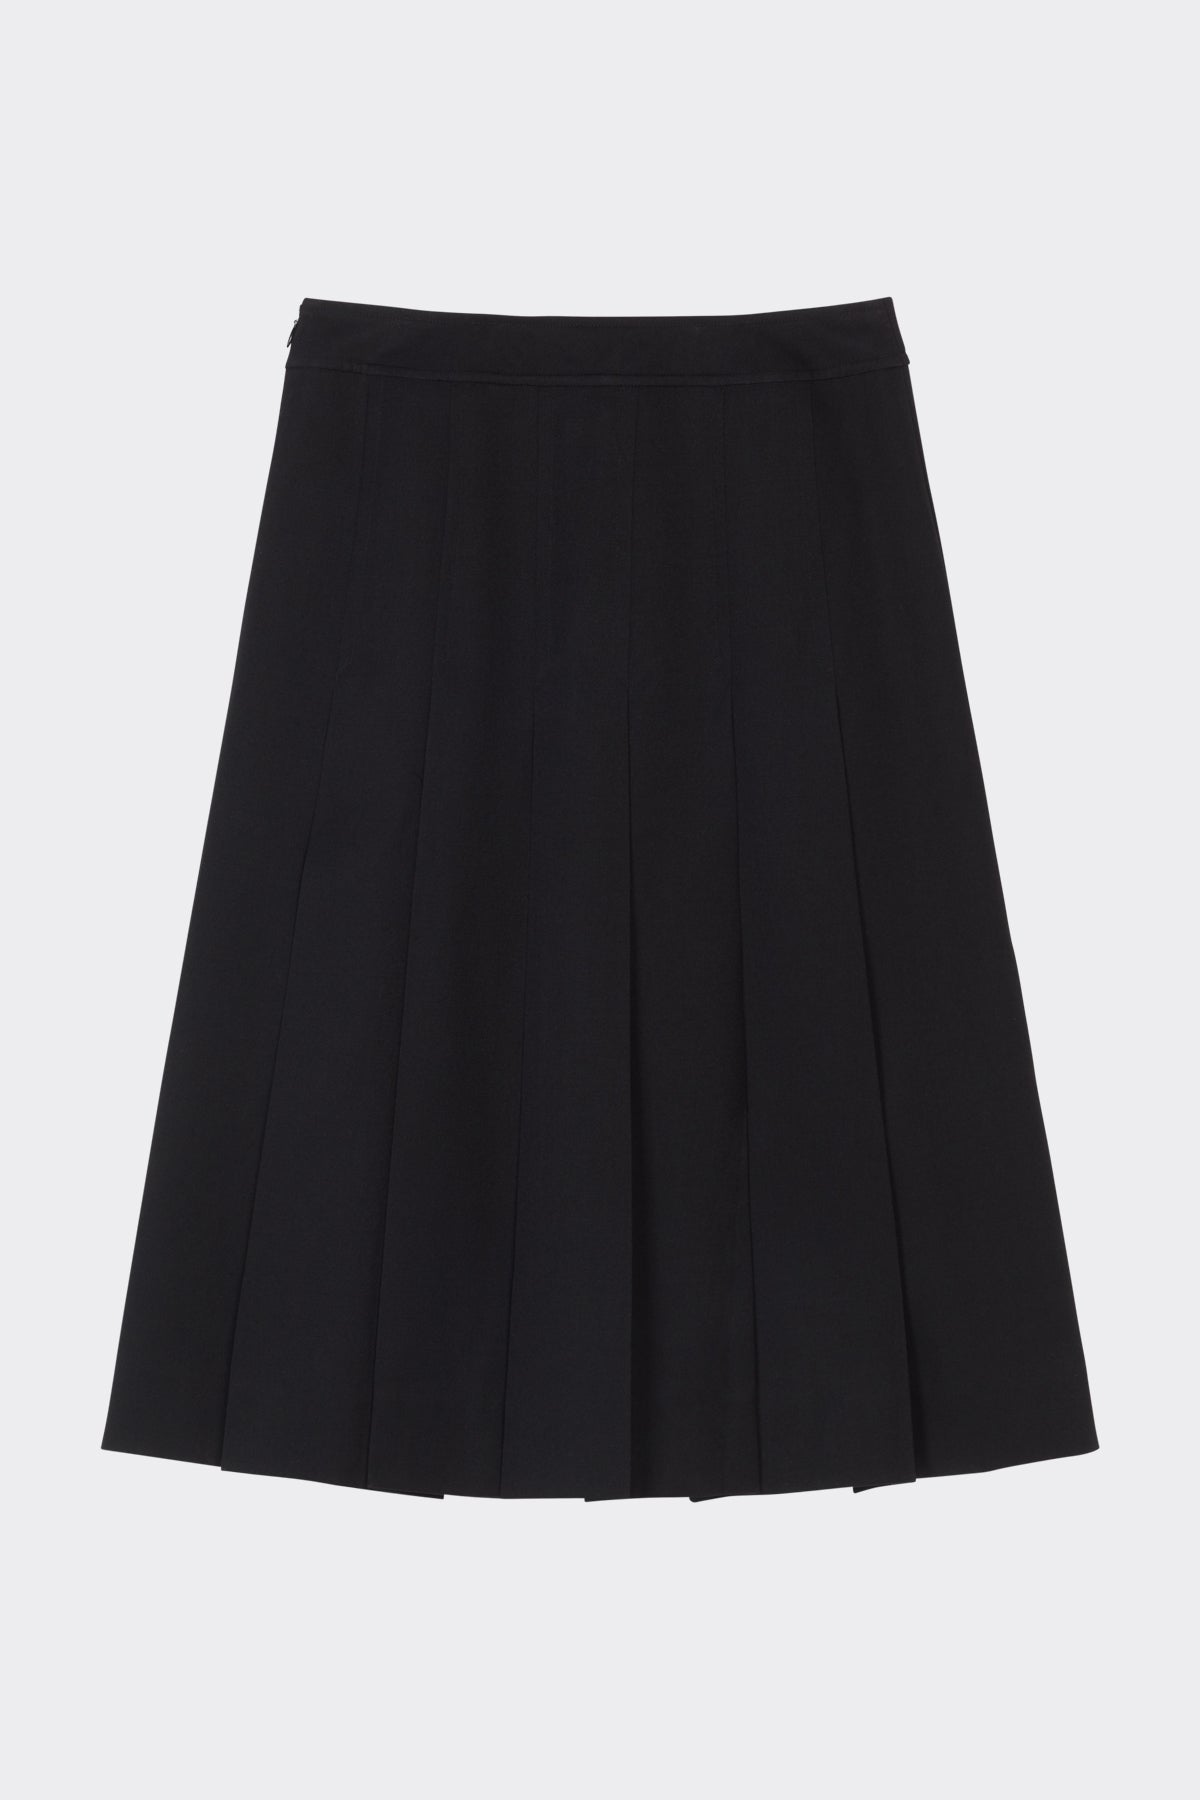 Cheri Skirt in Black | Noon By Noor